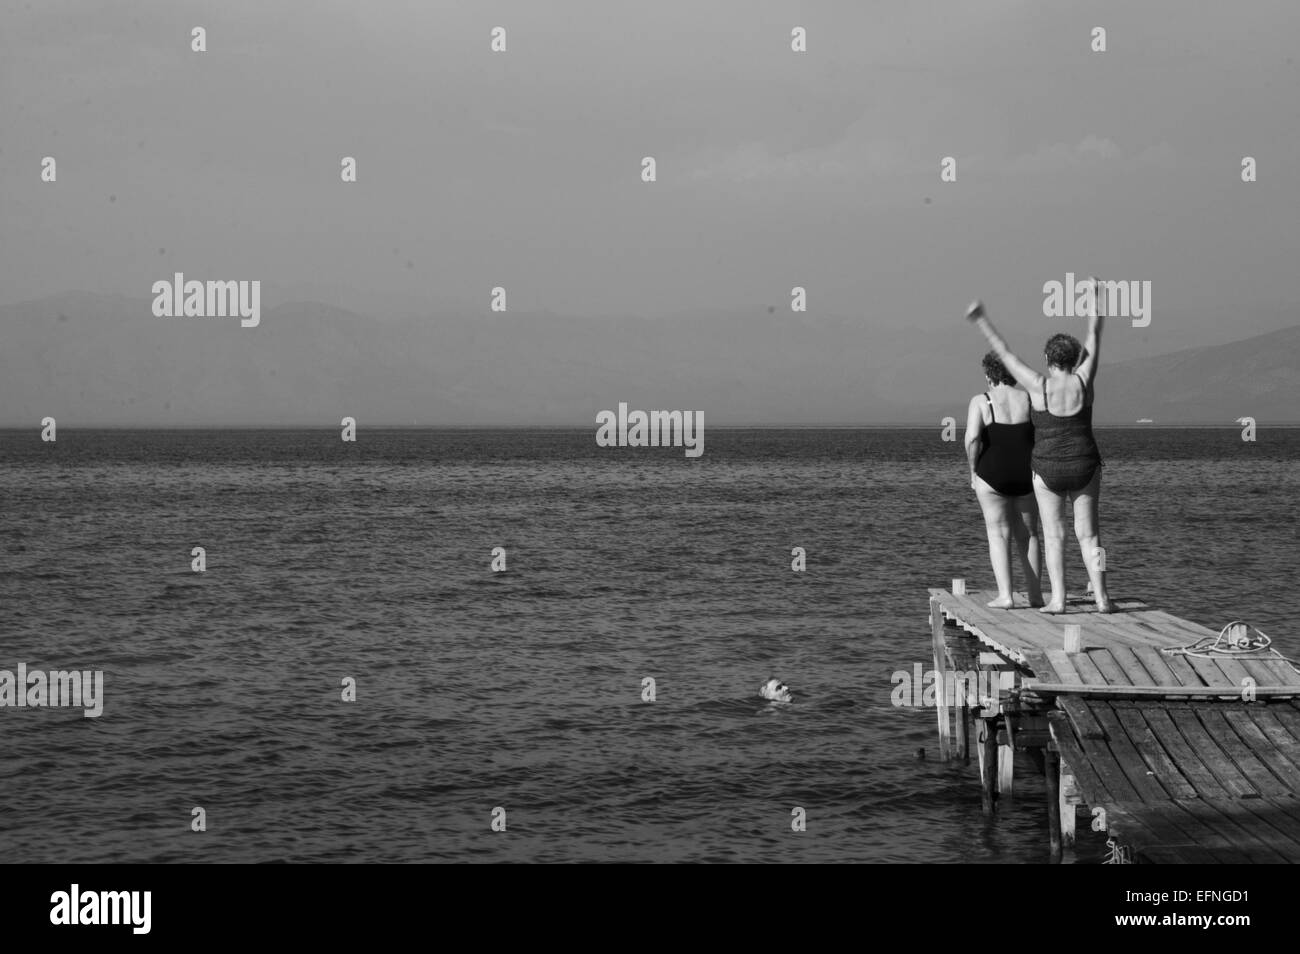 Foto in bianco e nero di due signore felice sui costumi da bagno in un molo in legno momenti prima di saltare nell'acqua. Foto Stock